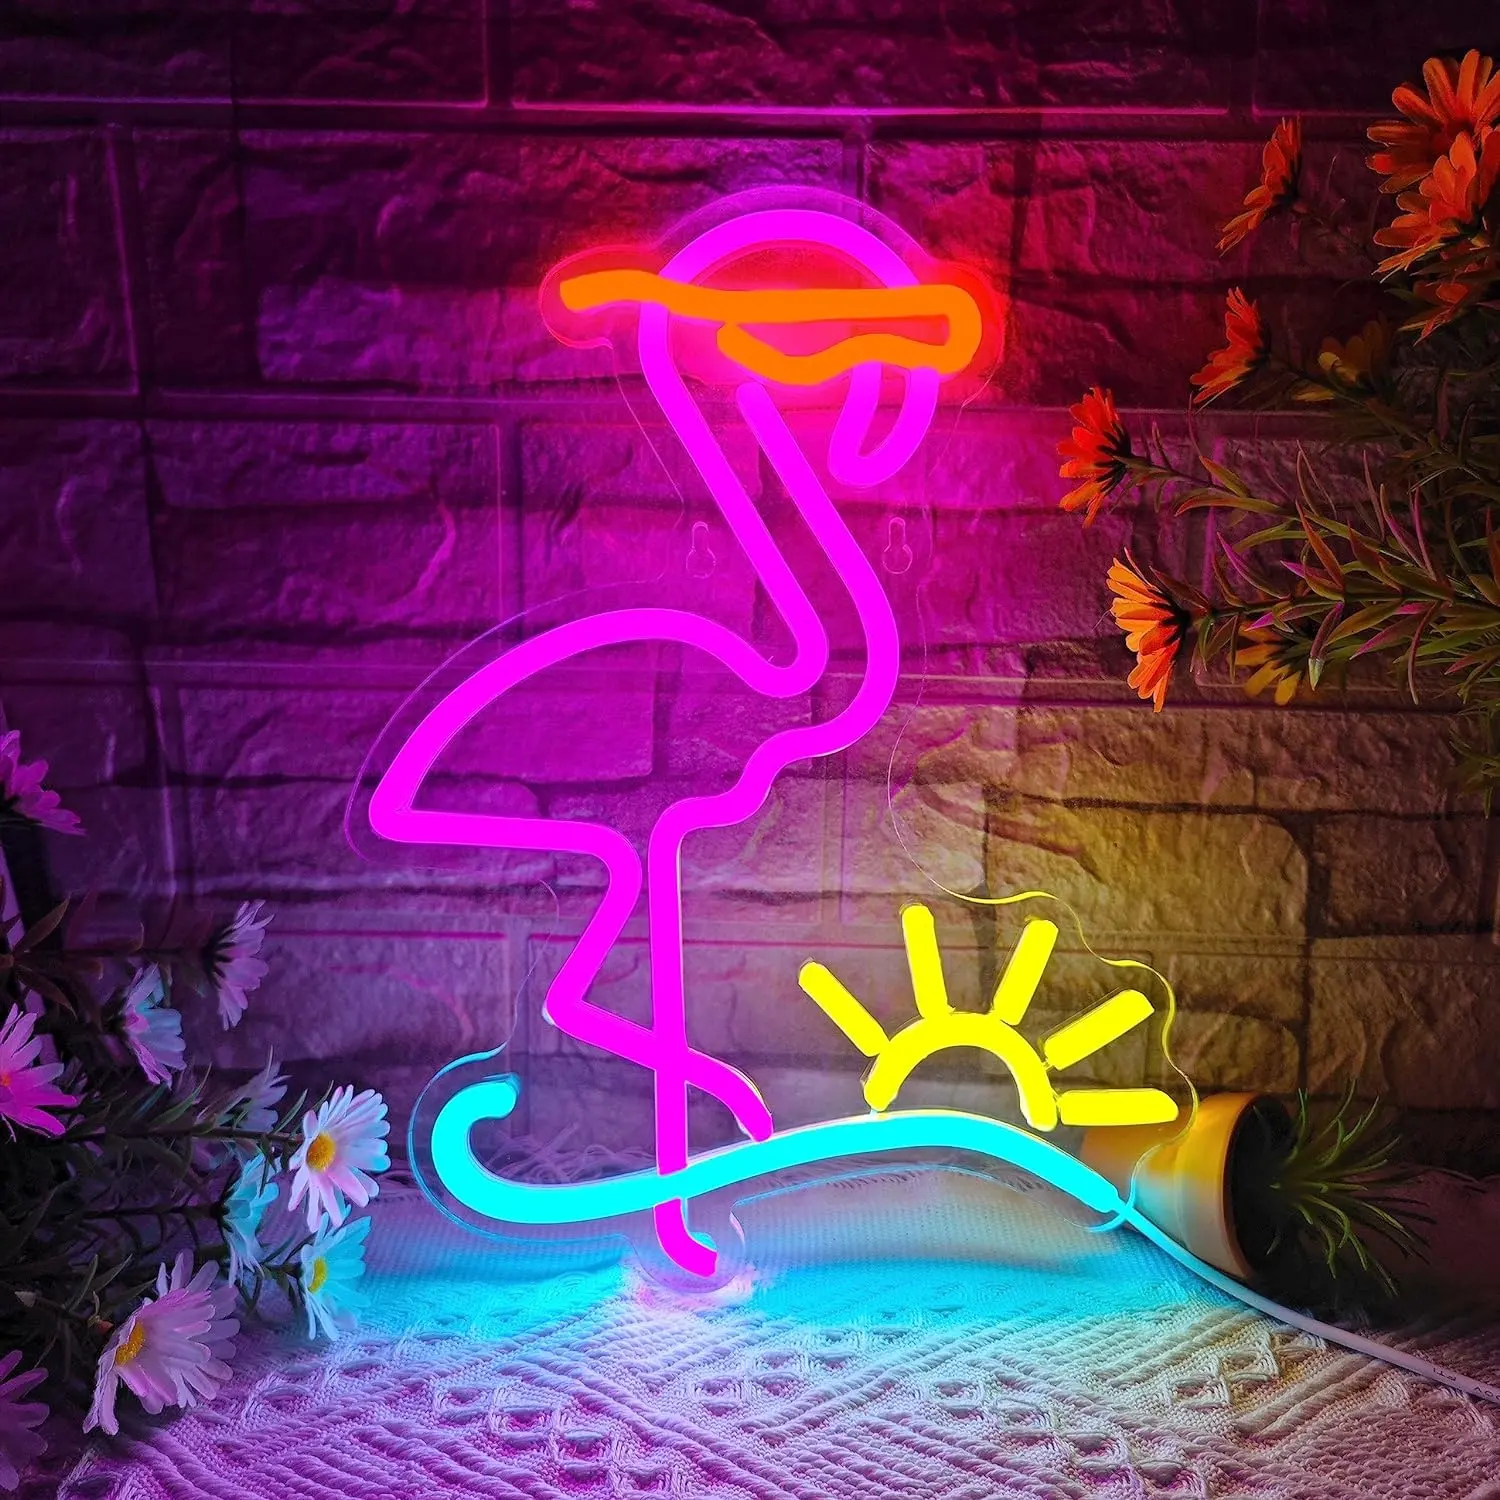 Fenicottero segno al Neon sole onda insegne al Neon per decorazione della parete USB alimentato con fenicotteri e luci al Neon onda del sole